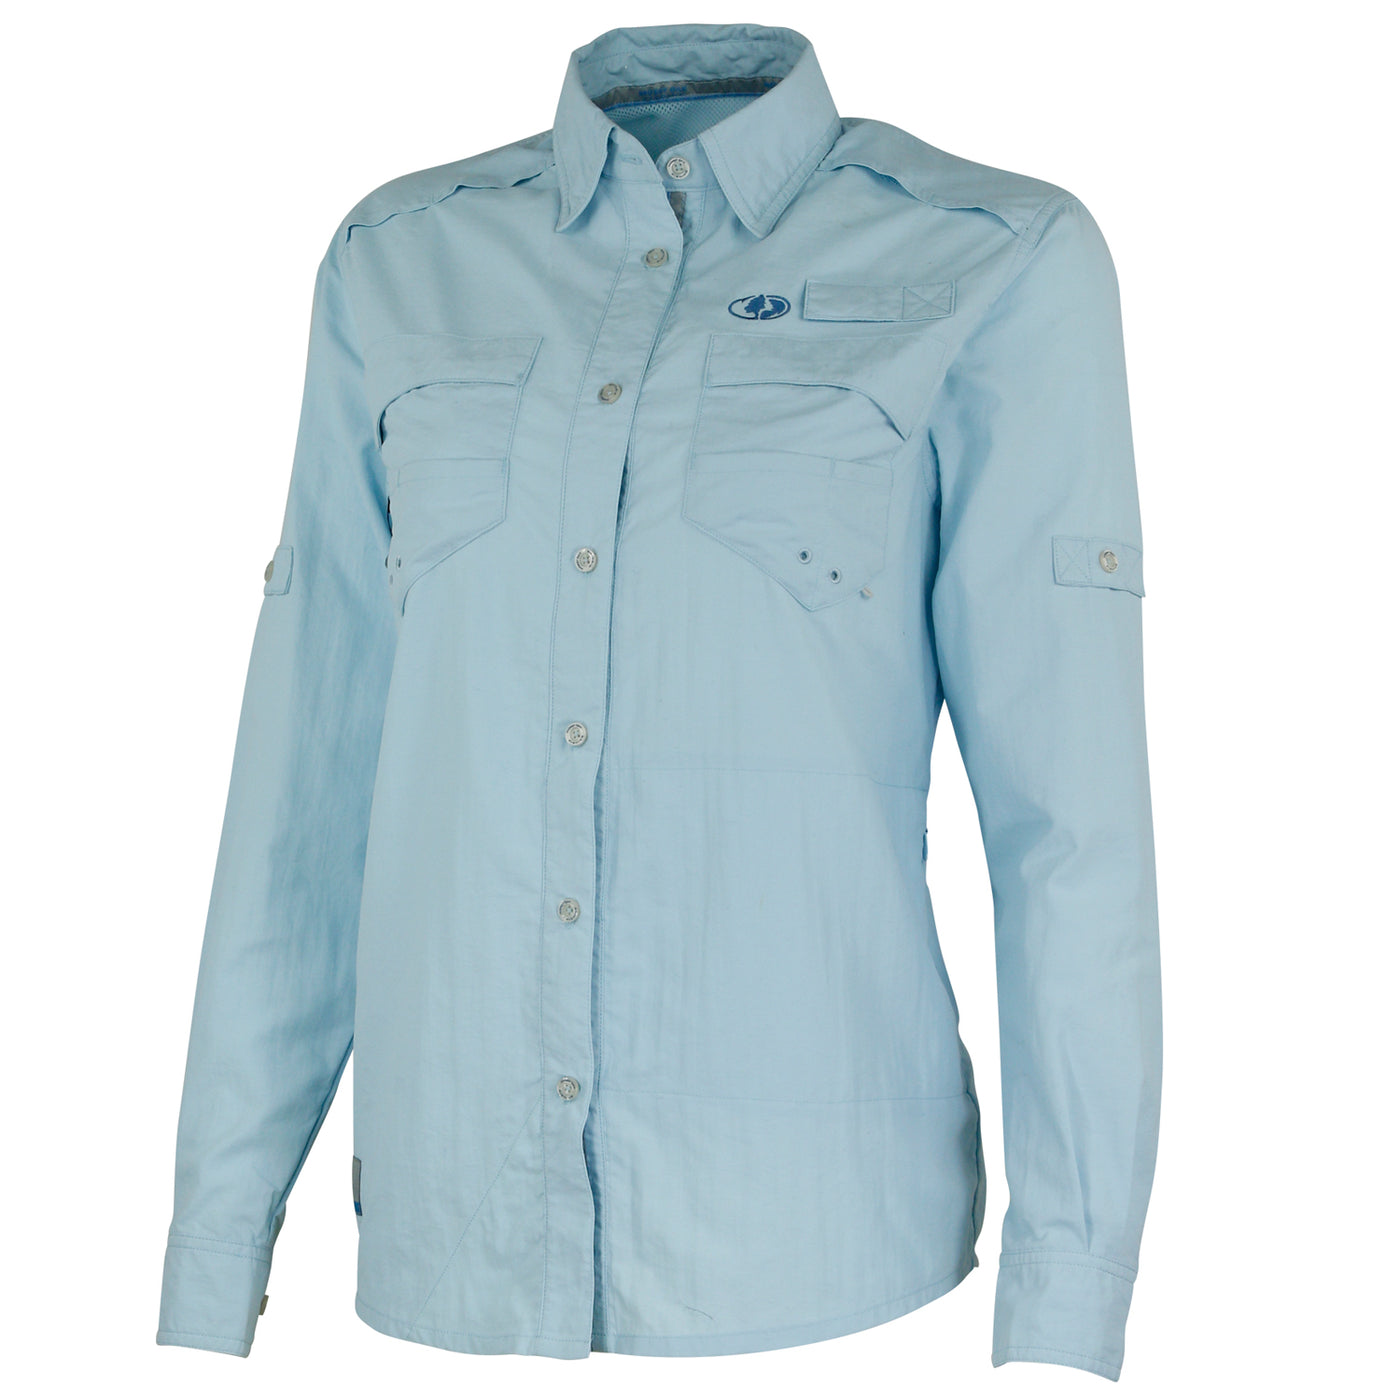 Mossy Oak Women's Long Sleeve Fishing Shirt - M / Cool Blue